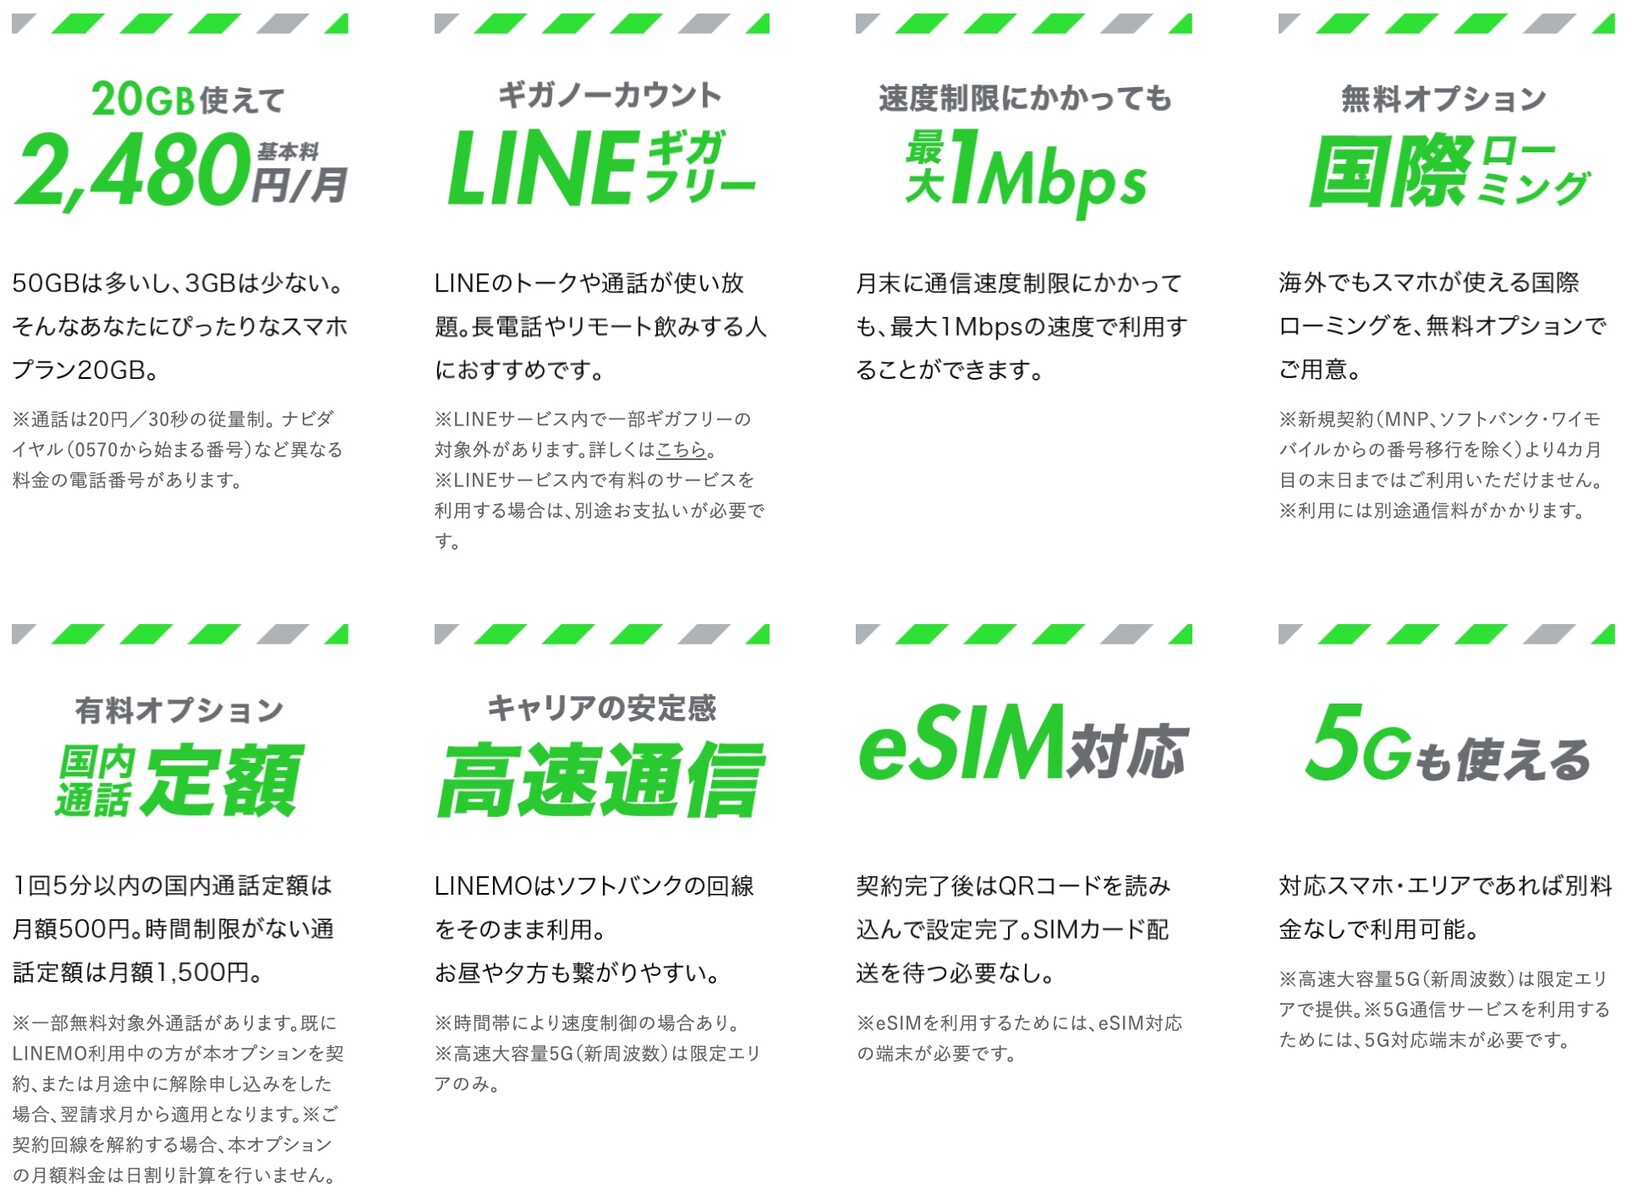 ソフトバンク 新料金ブランド Linemo の対応機種を案内 Iphone 6s以降やipad Pixel 4a以降など Esimも確認 キャリア決済は提供予定 S Max